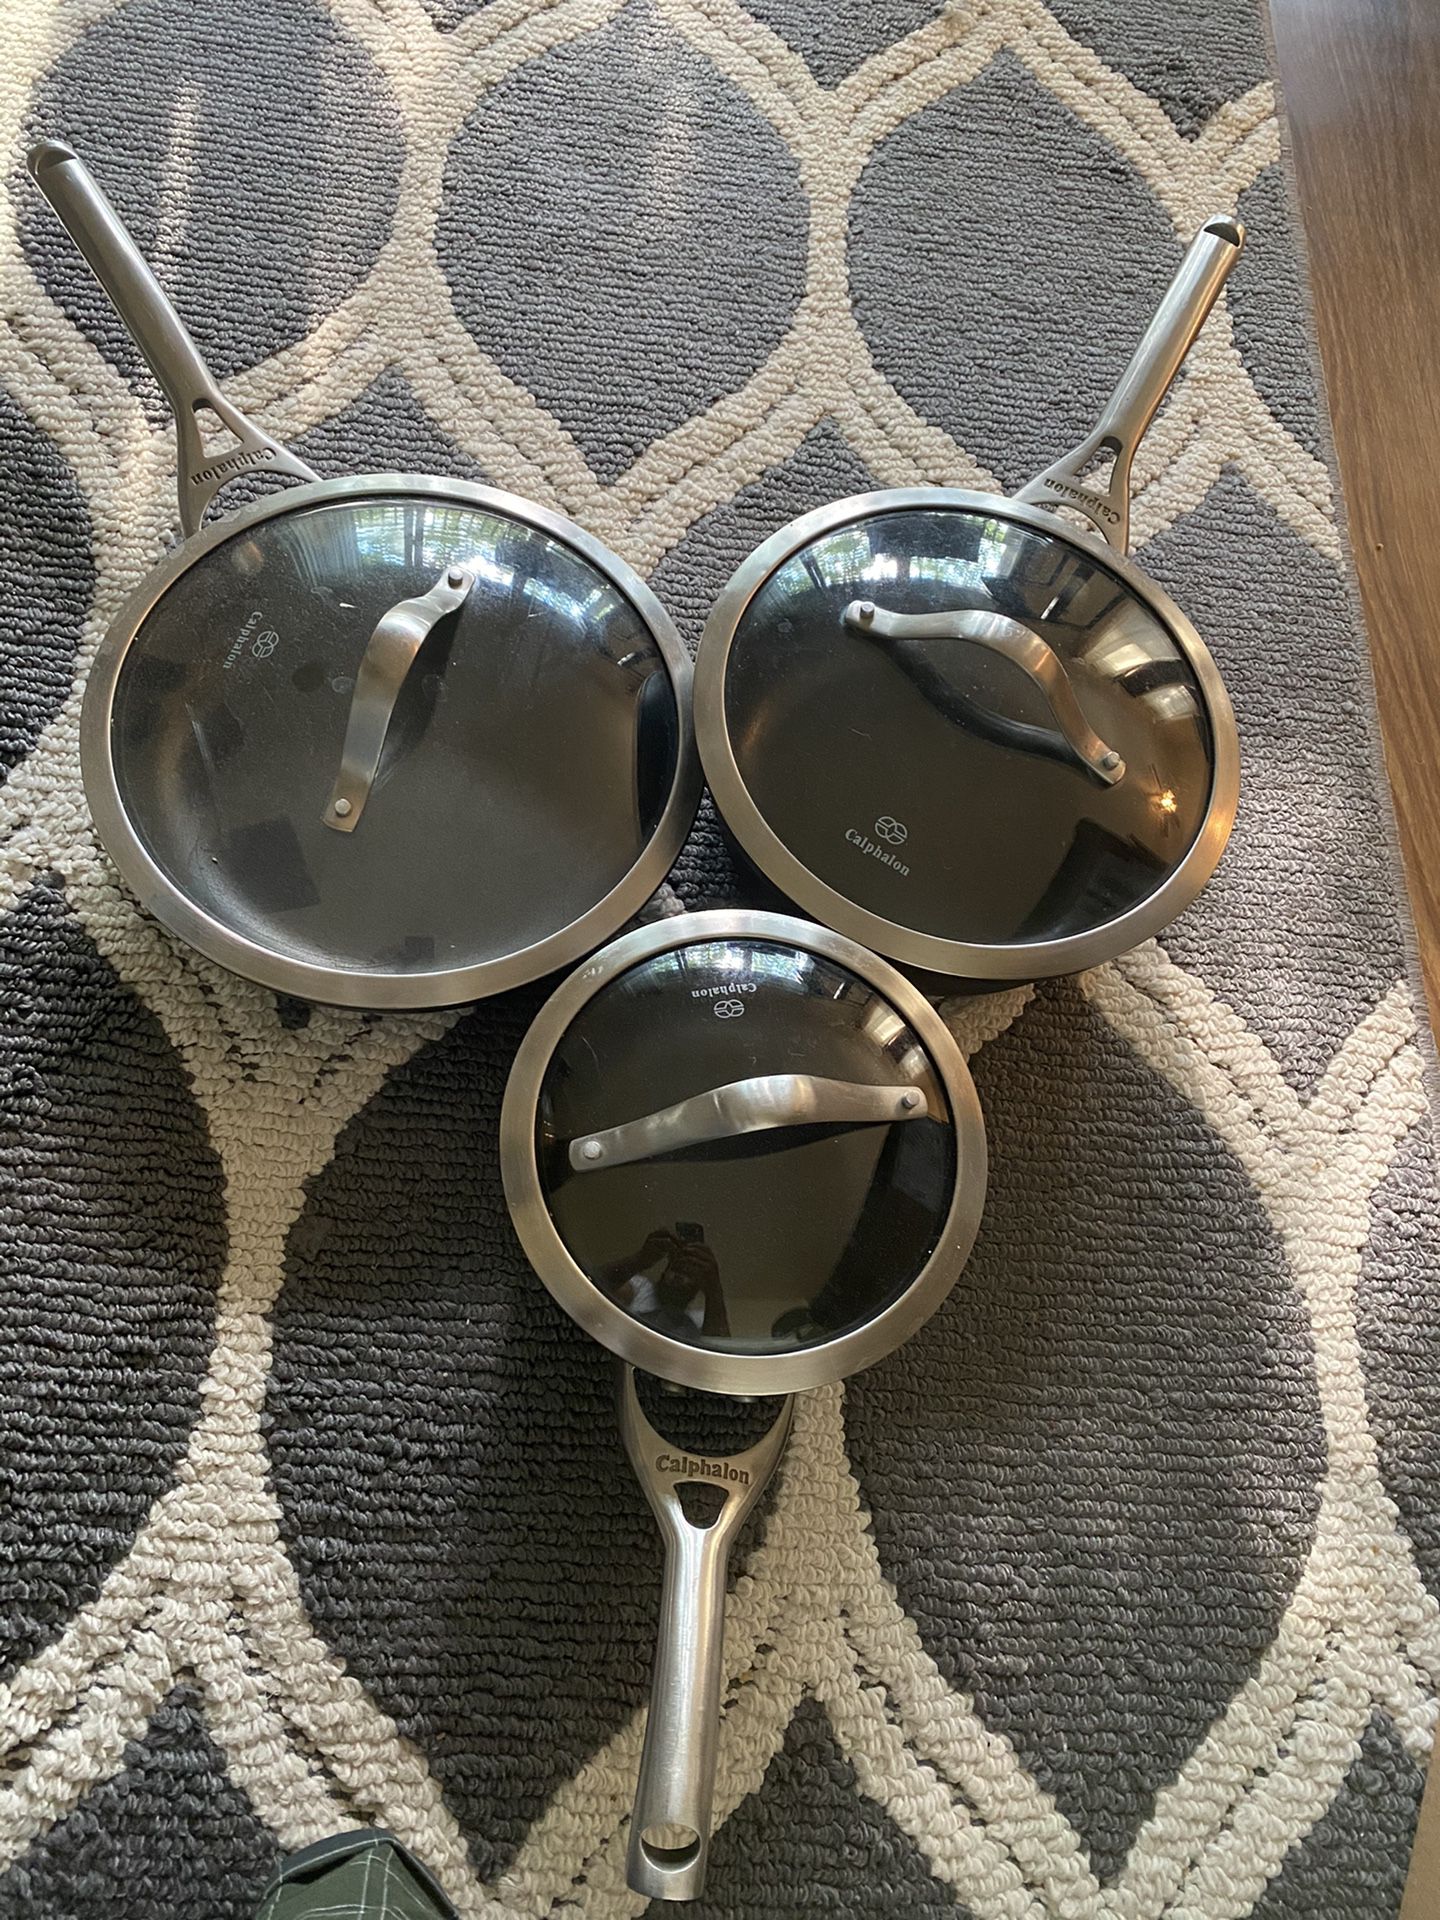 Calphalon pots/pan with lids